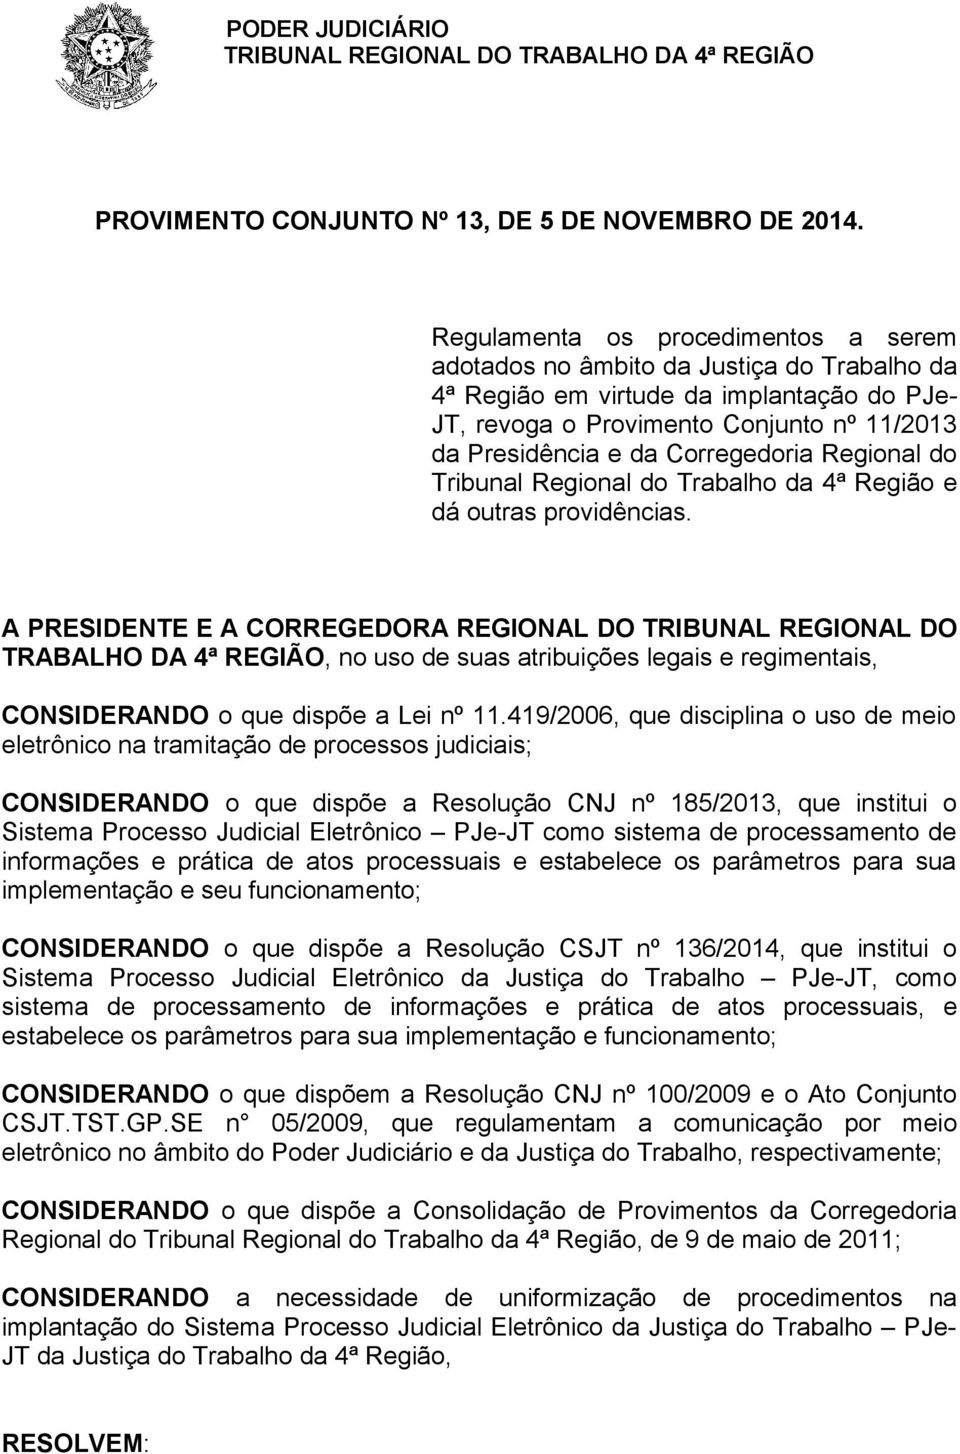 Corregedoria Regional do Tribunal Regional do Trabalho da 4ª Região e dá outras providências.